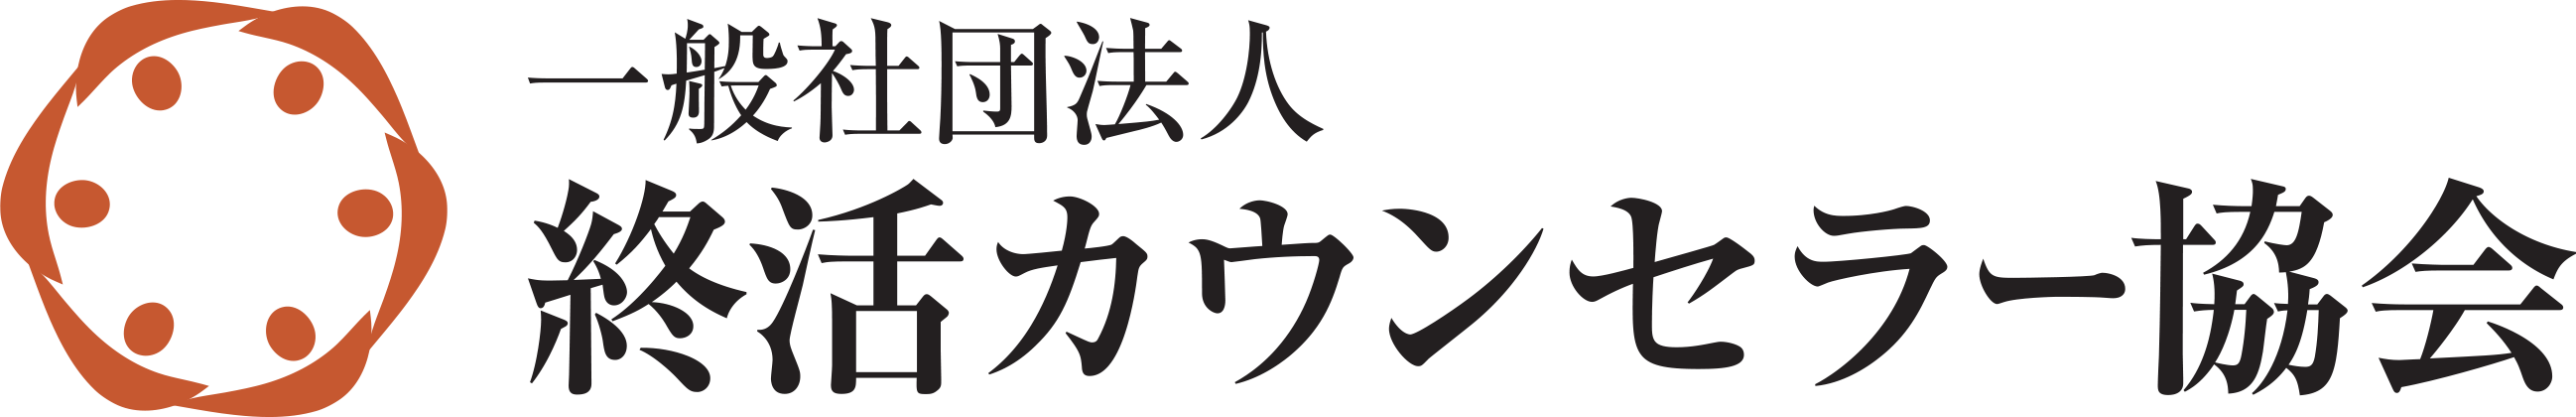 終活カウンセラー協会ロゴ